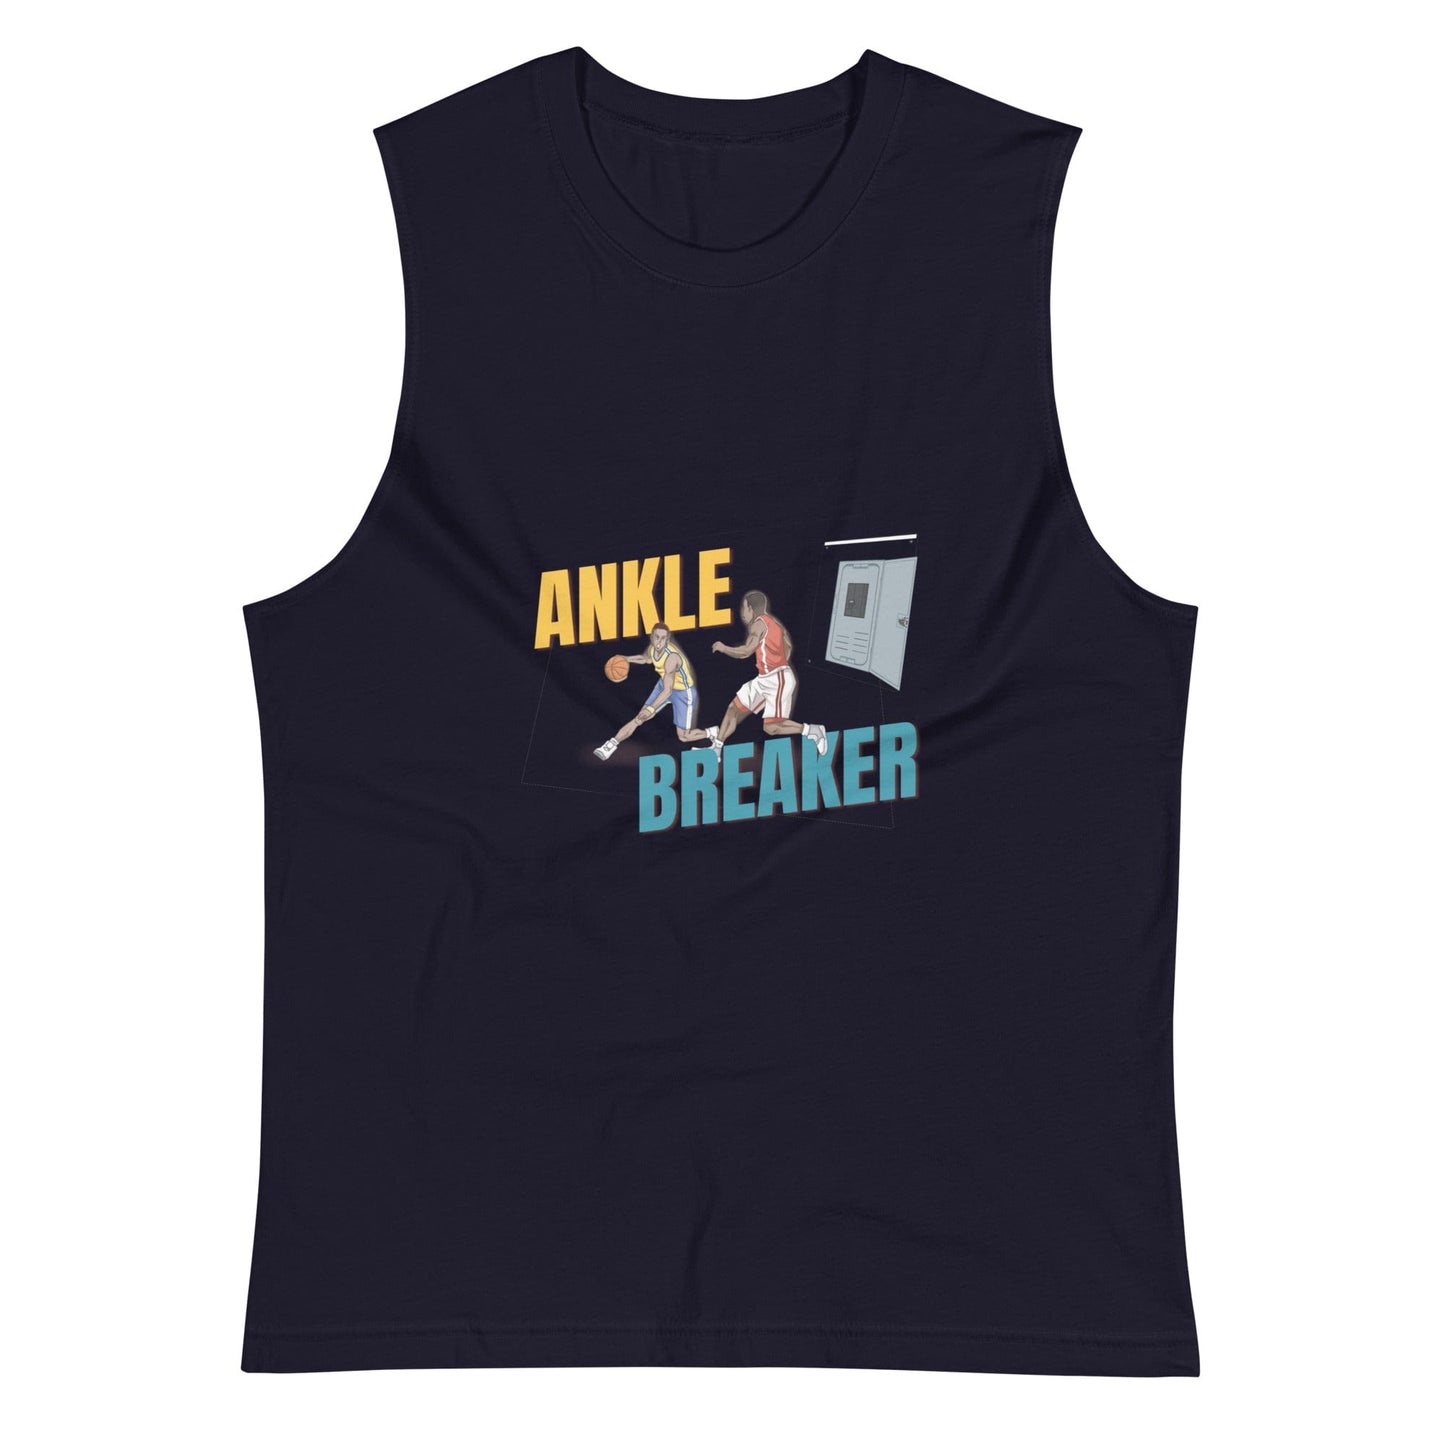 Ankle Breaker - Muscle Shirt